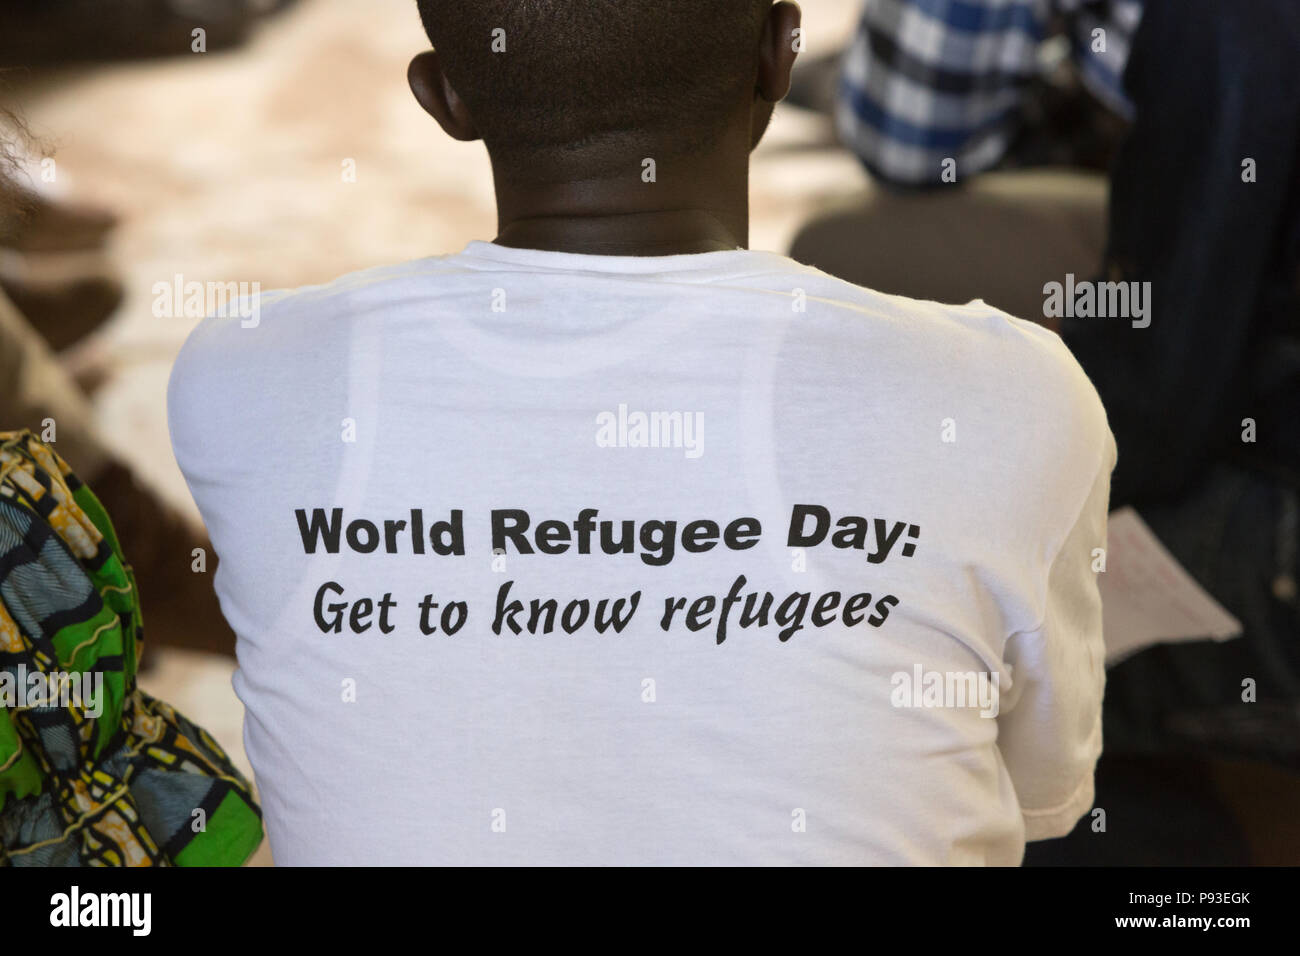 Kakuma, Kenia - Treffen mit dem Leiter der Jugend. Kontakt und Ansprechpartner für Flüchtlingsfragen, ausgewählt von jungen Bewohner der Flüchtlingslager Kakuma. Stockfoto